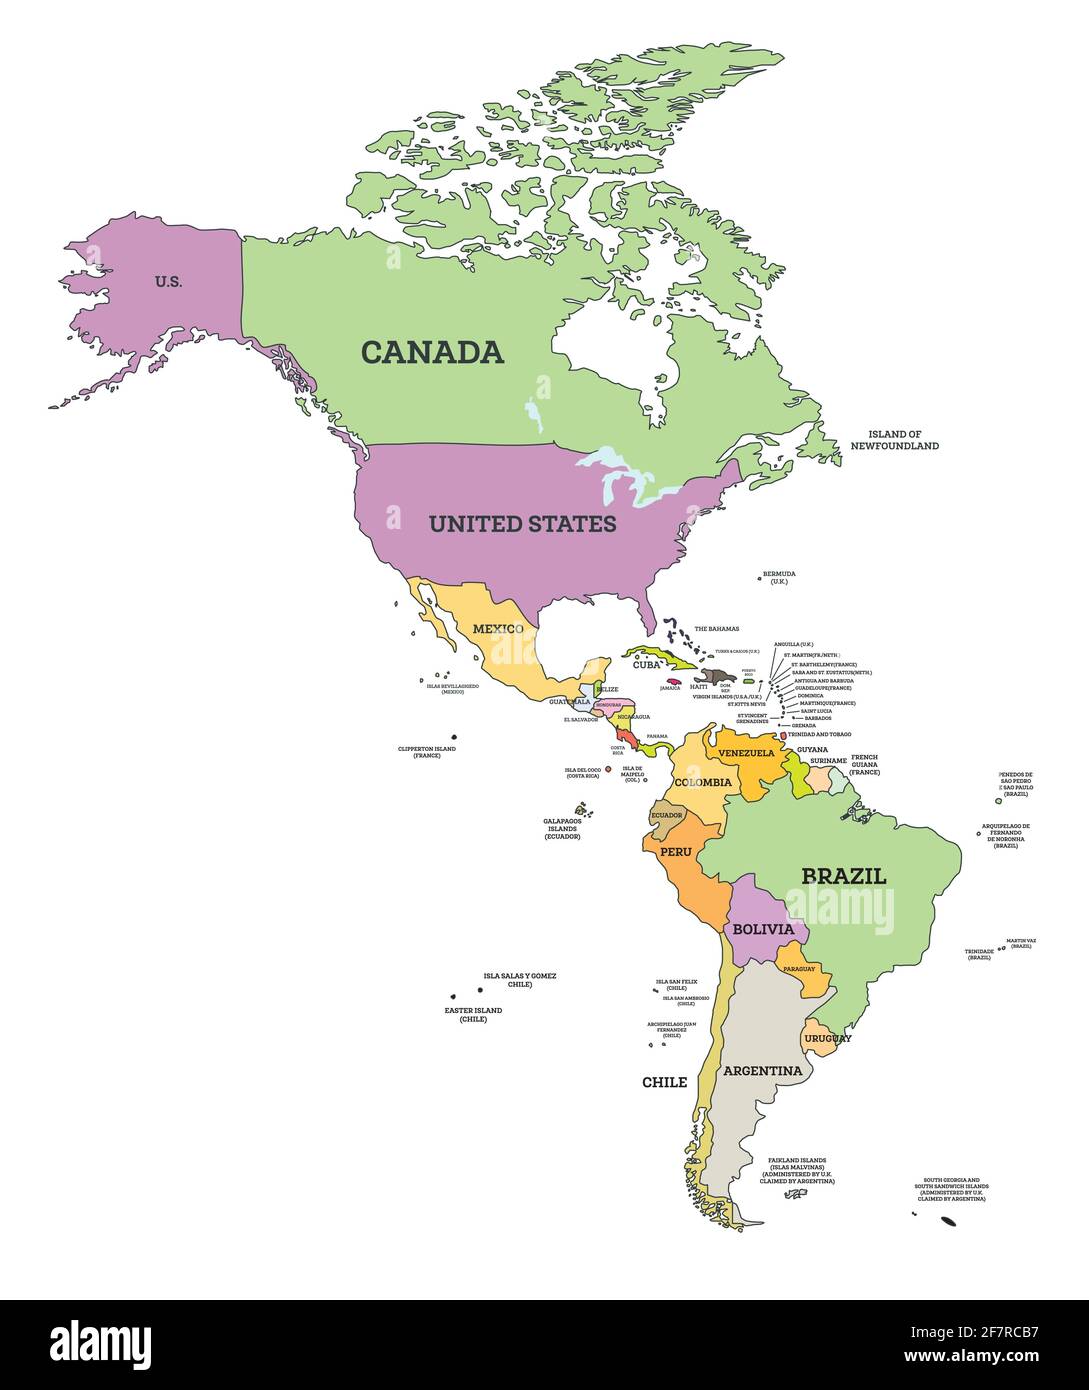 Politische Karte für Süd- und Nordamerika in der Mercator-Projektion. Vektorgrafik. Karte mit Namen der Länder, die auf Weiß isoliert sind. Stock Vektor